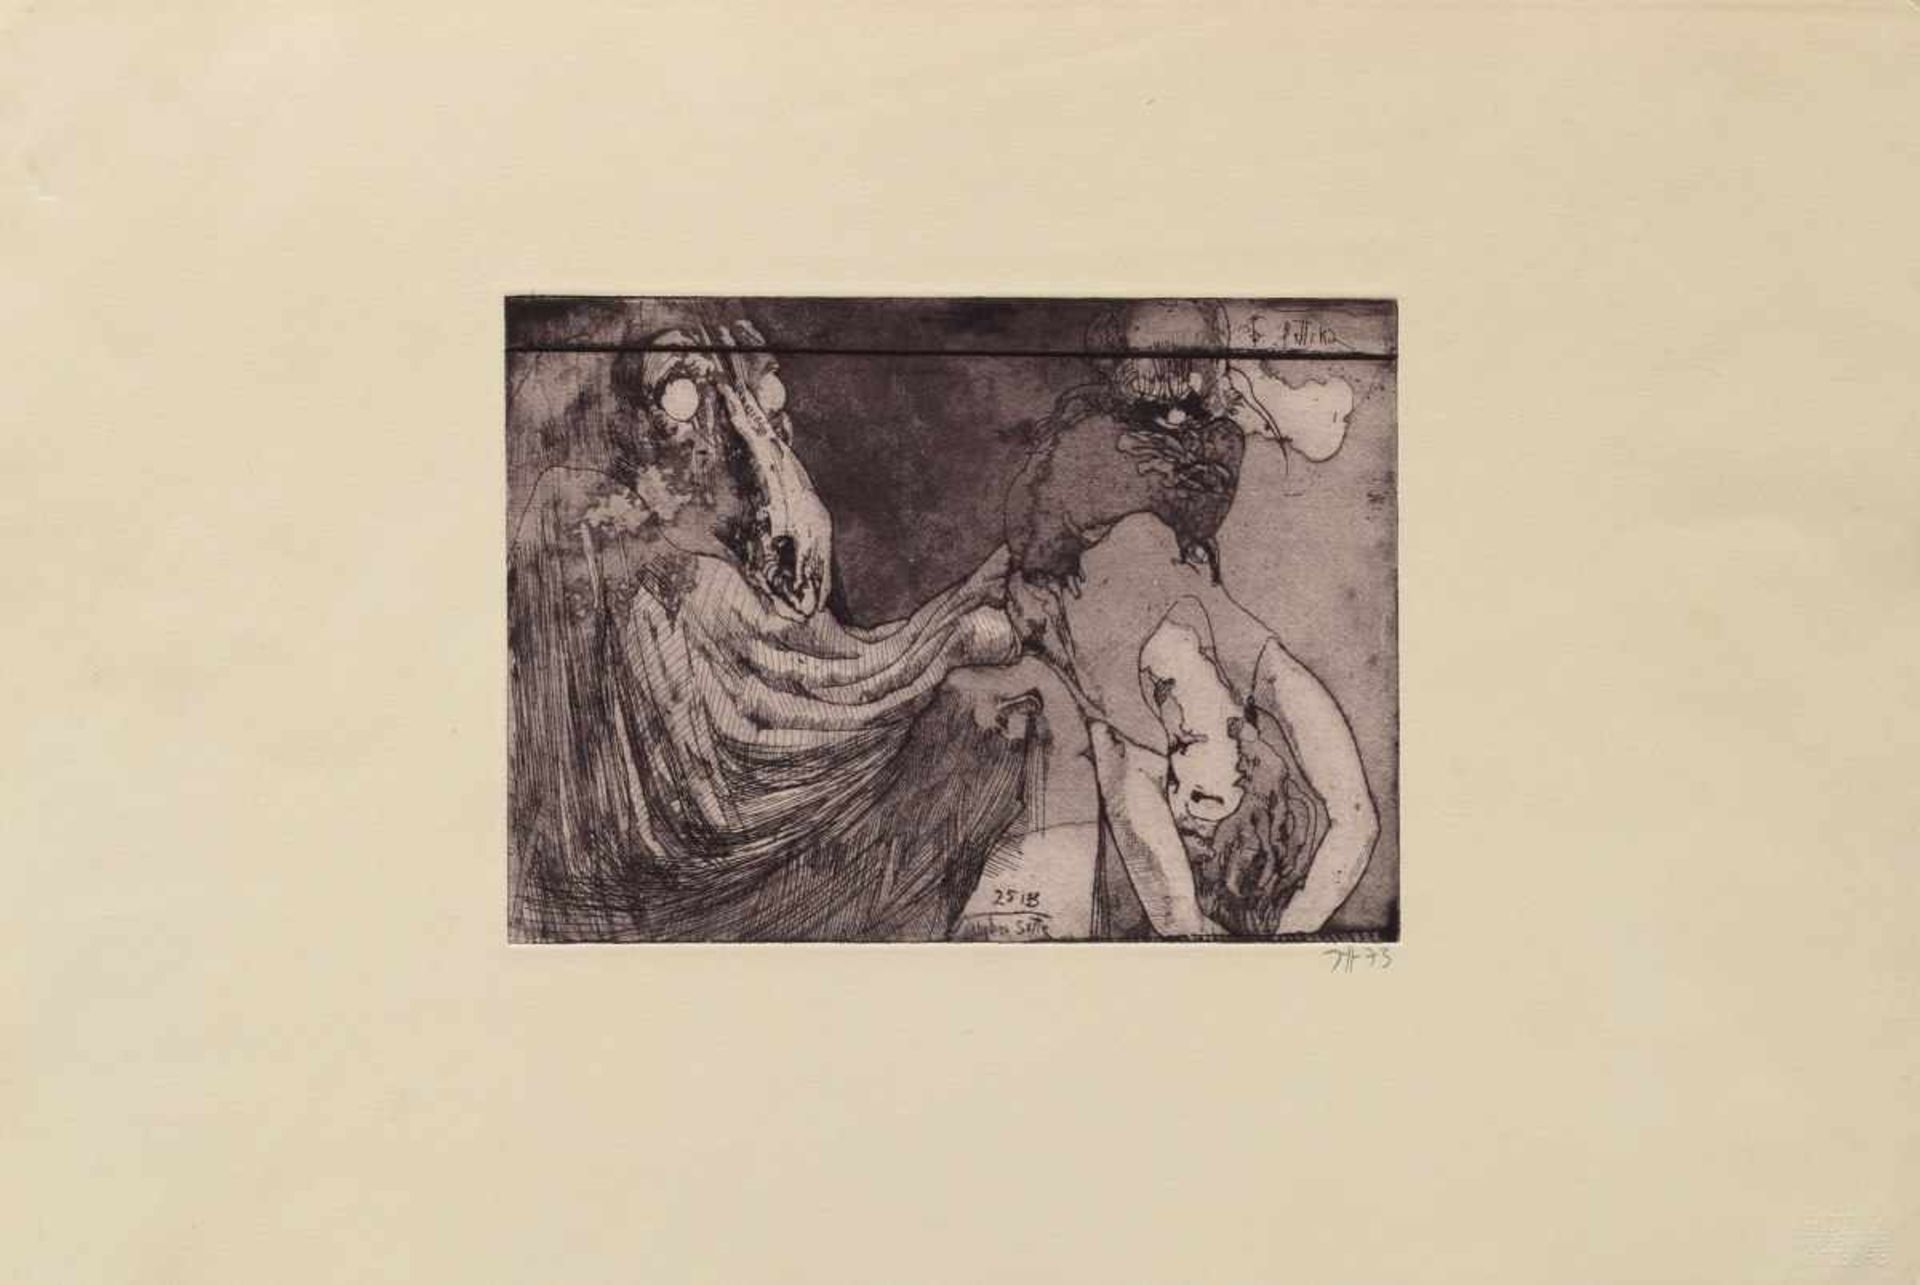 Janssen, Horst (1929-1995) "Alpchen Suite for Bettina" 25.1.73, red chalk etching, embossed "Jens - Bild 2 aus 2